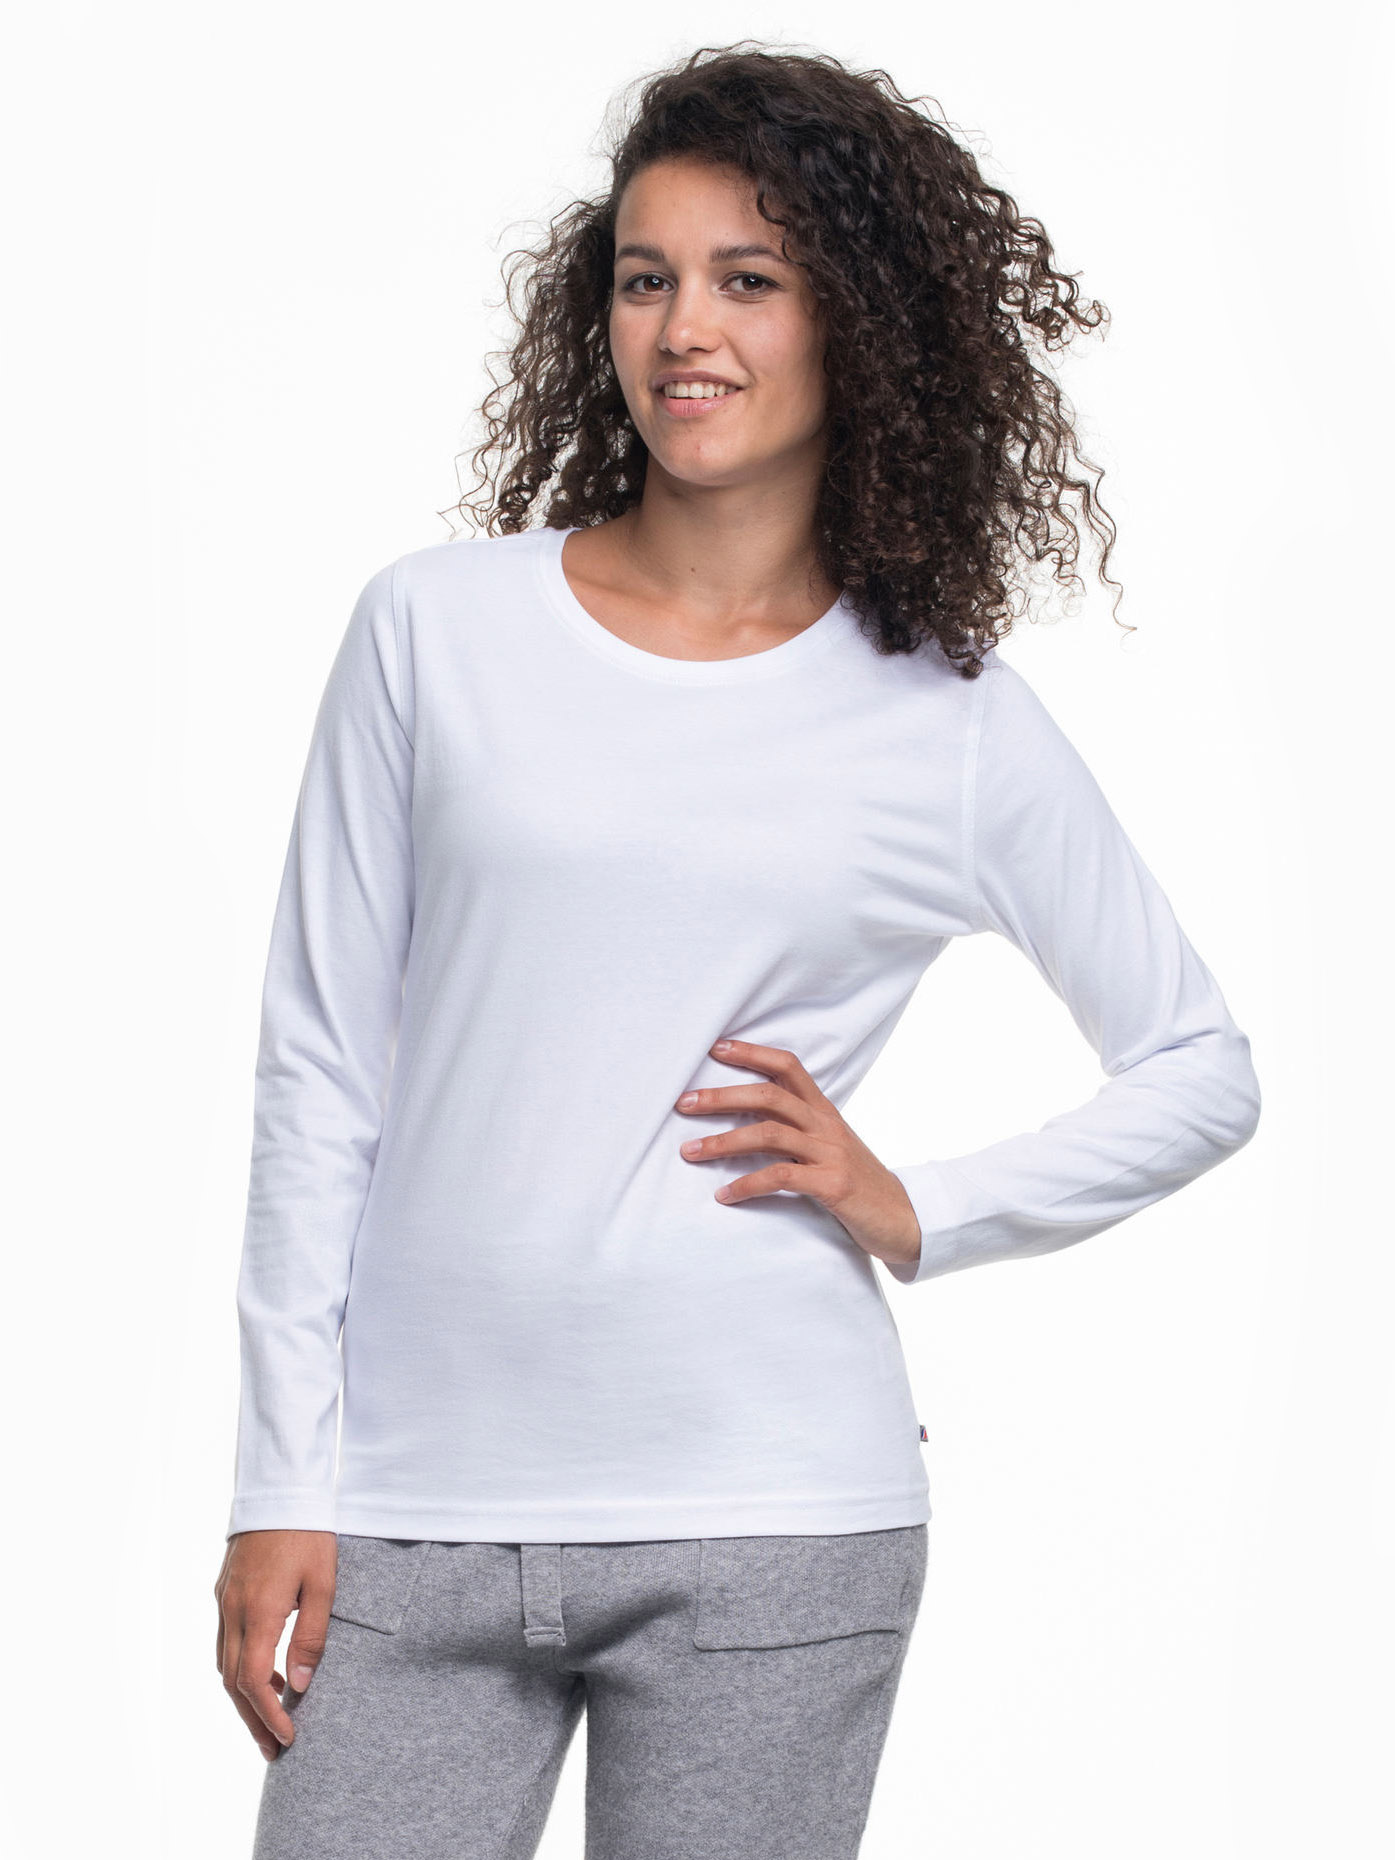 Женская футболка с длинным рукавом Promostars 21403 Voyage